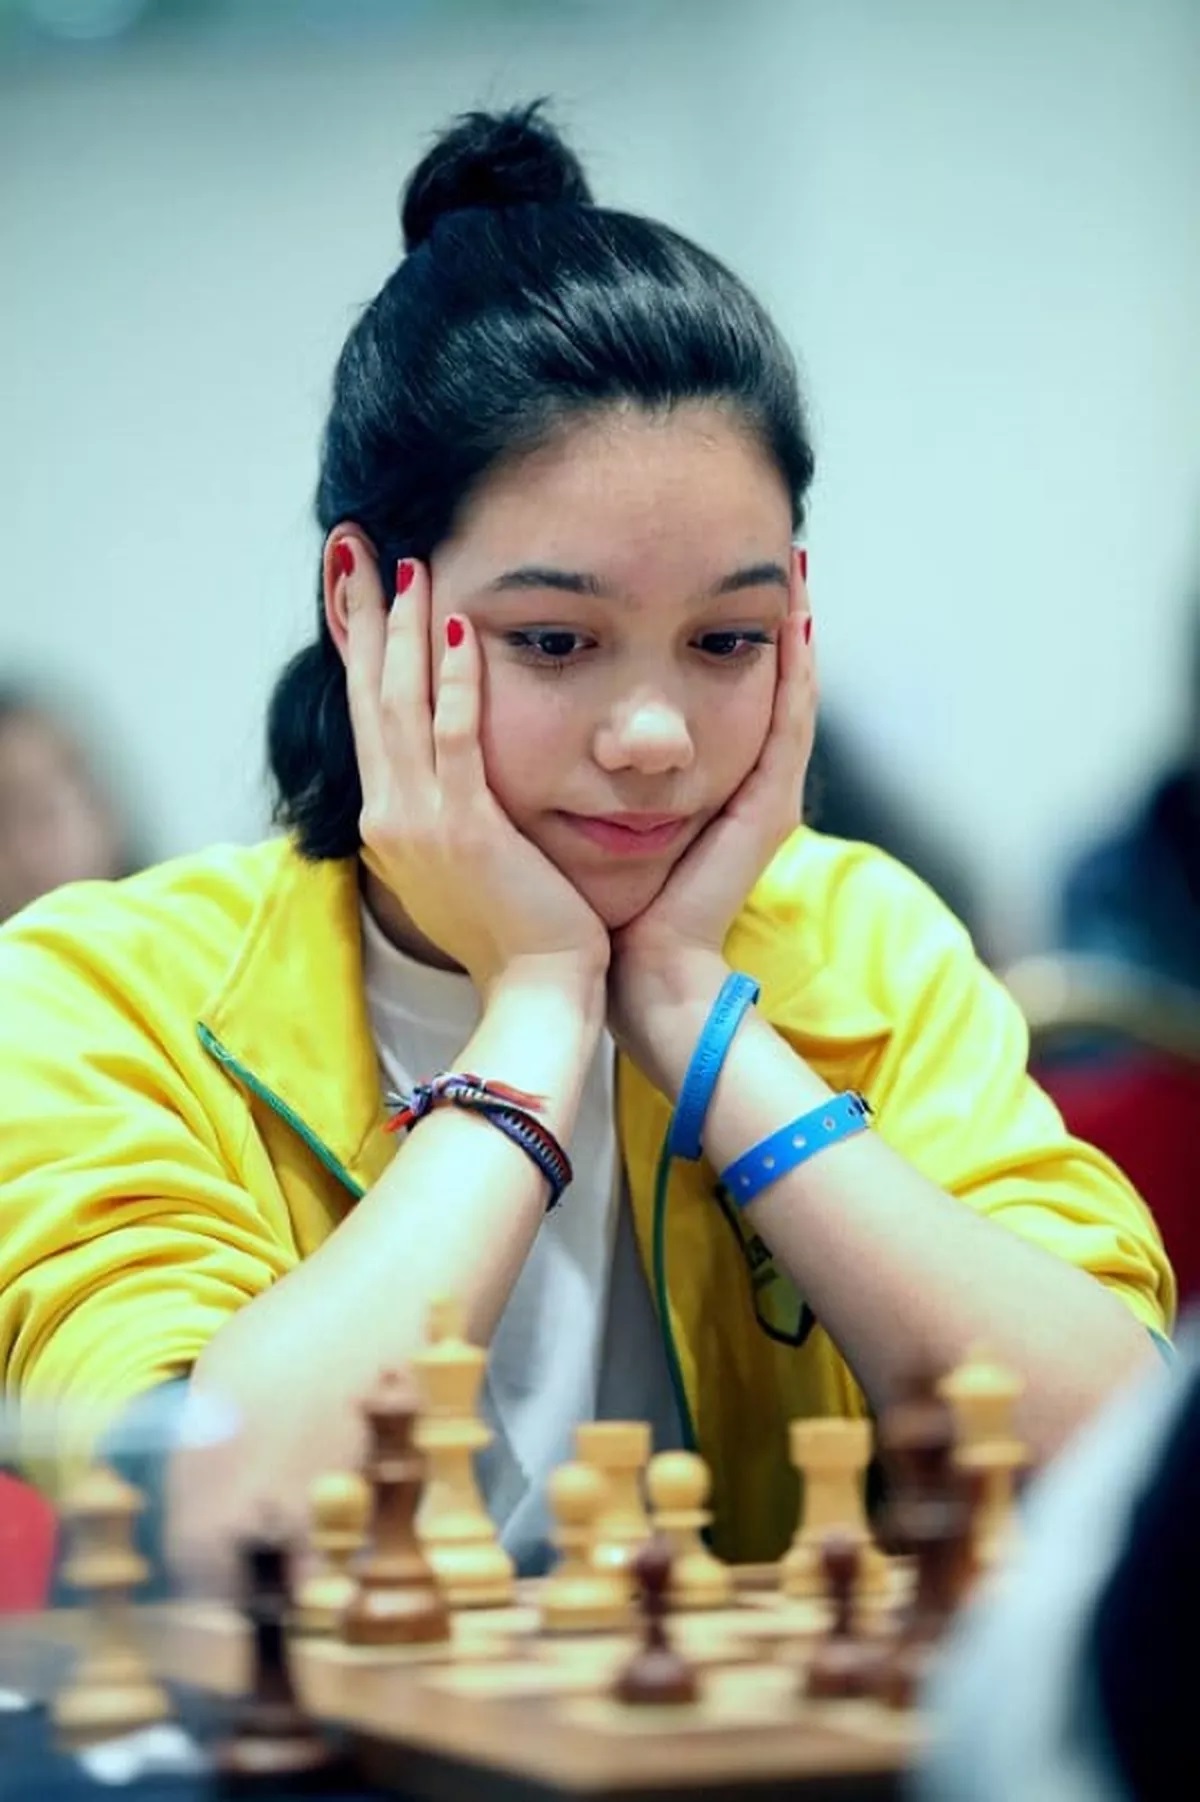 Estudante angrense é medalhista em Campeonato Brasileiro de Xadrez - Jornal  Tribuna Livre